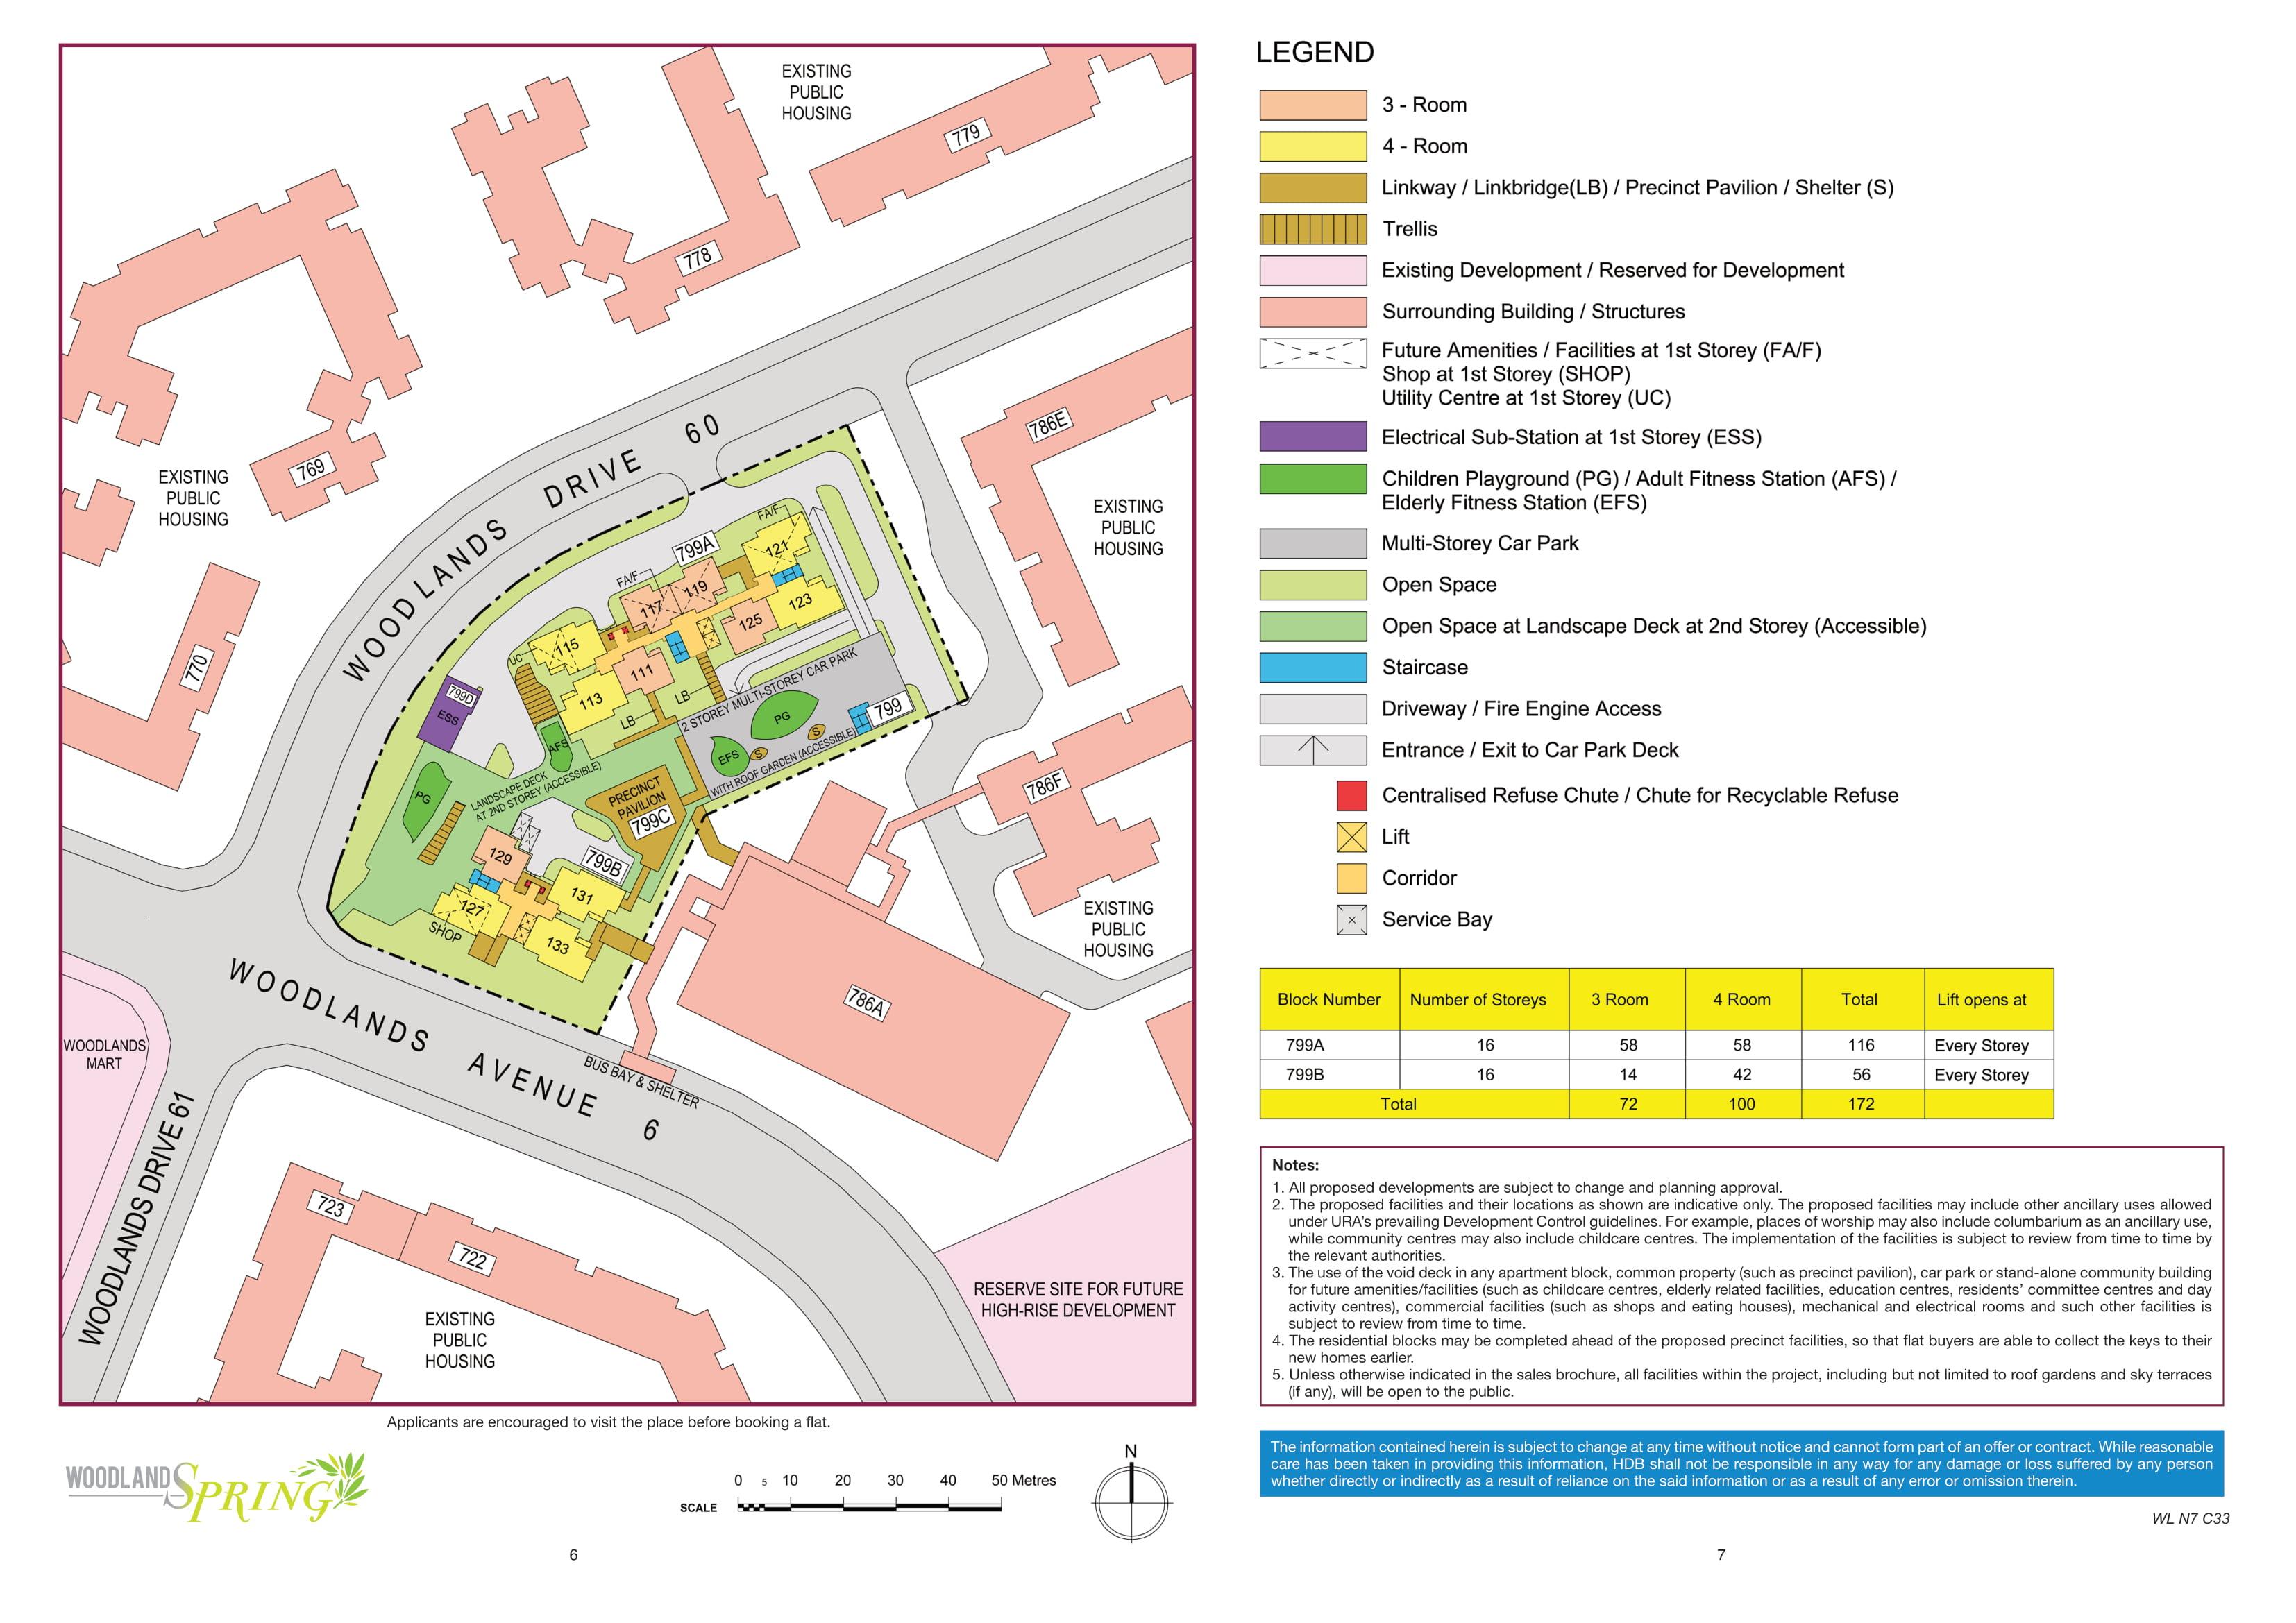 Woodlands Spring site-plan